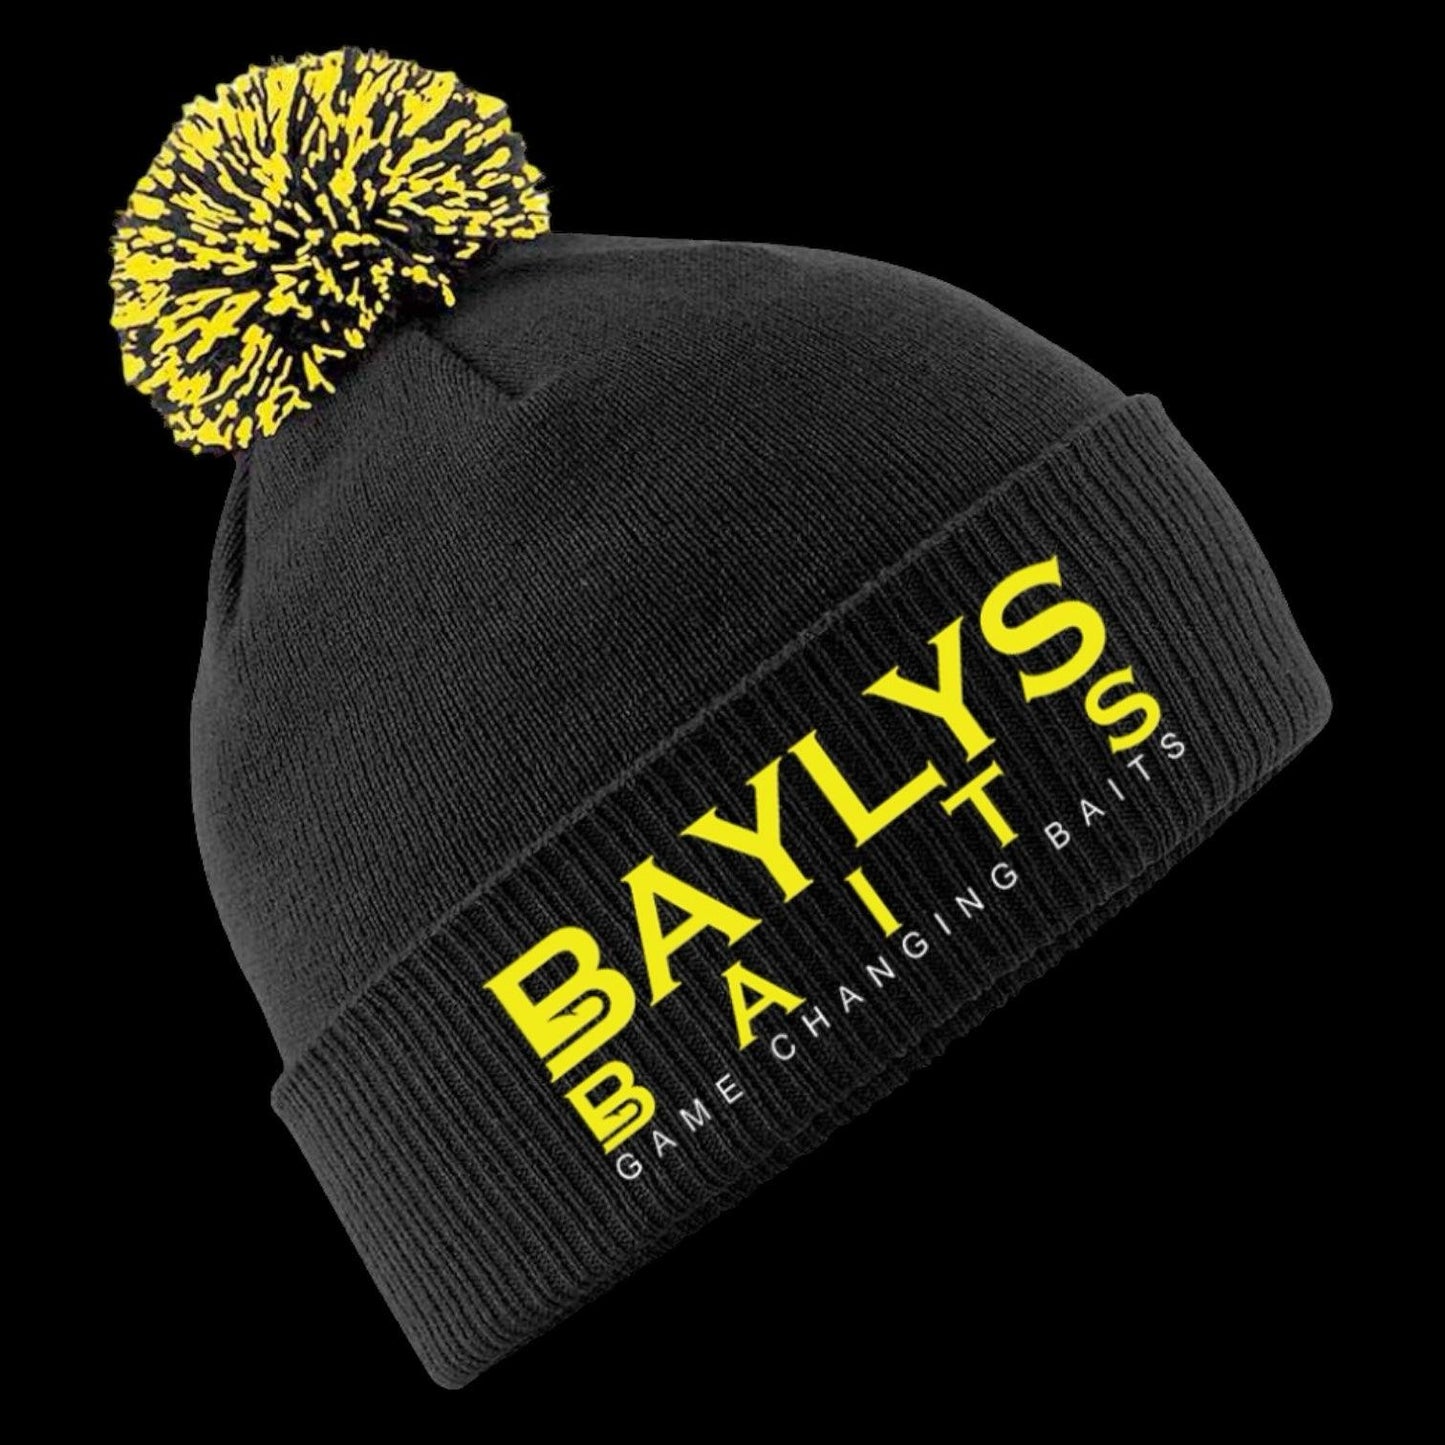 Baylys LTD edition Beanie - Baylys Baits 